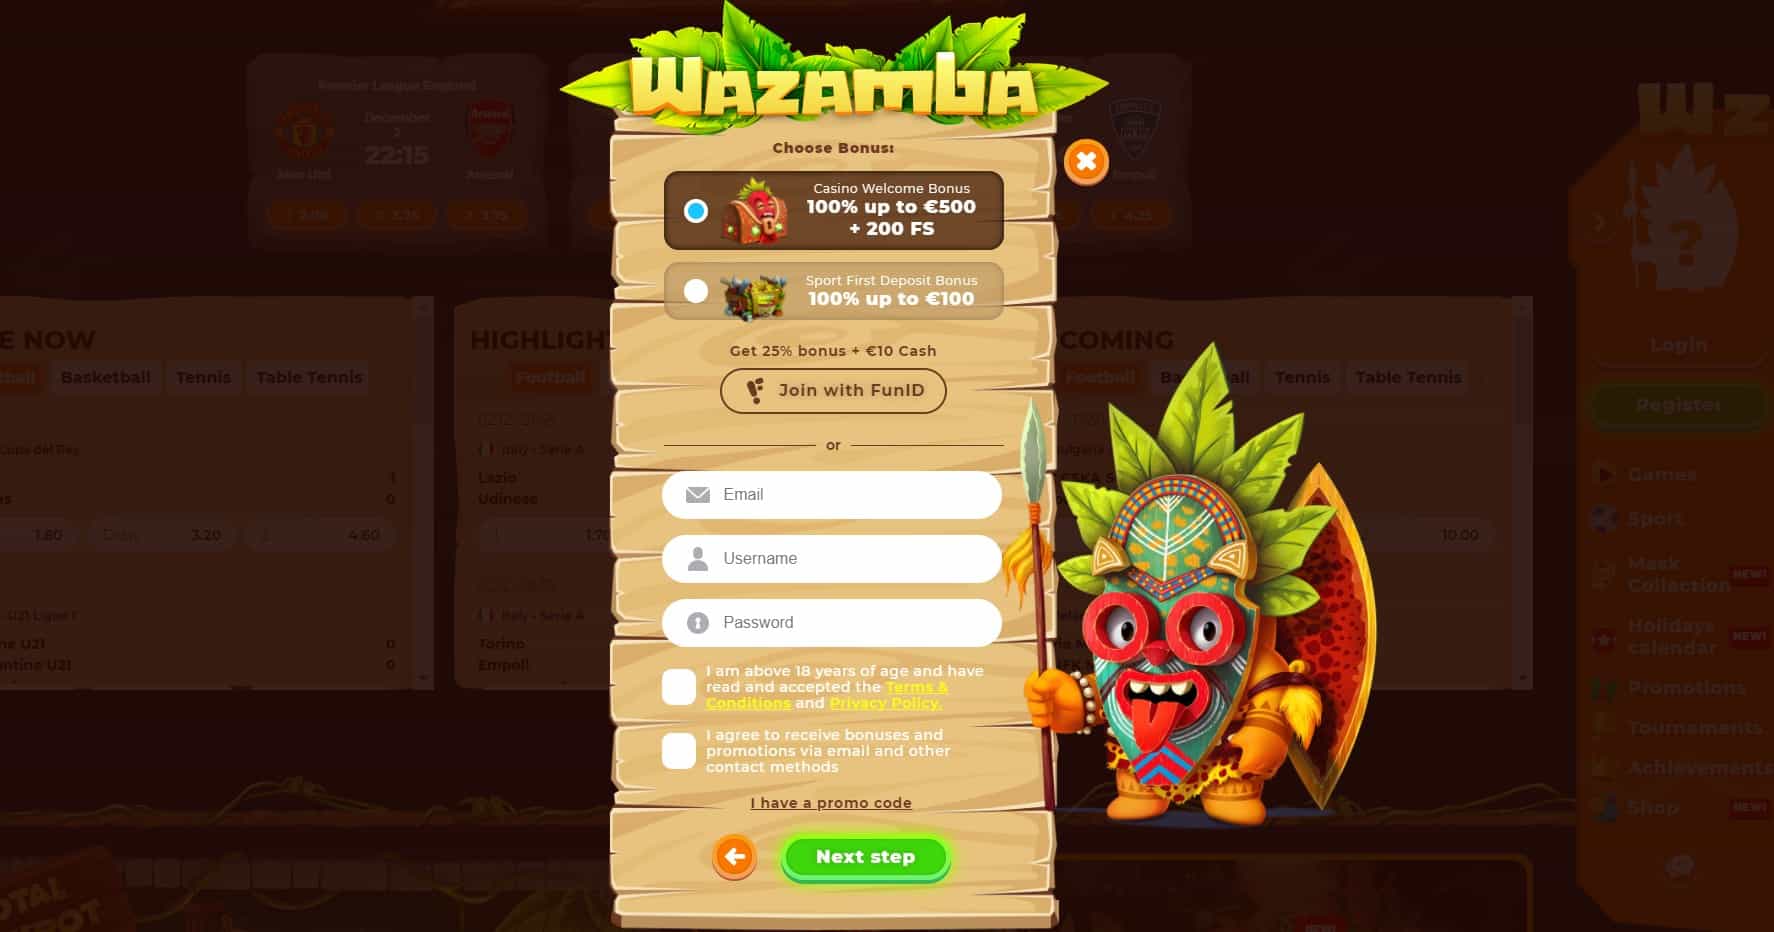 Wazamba Casino Registration